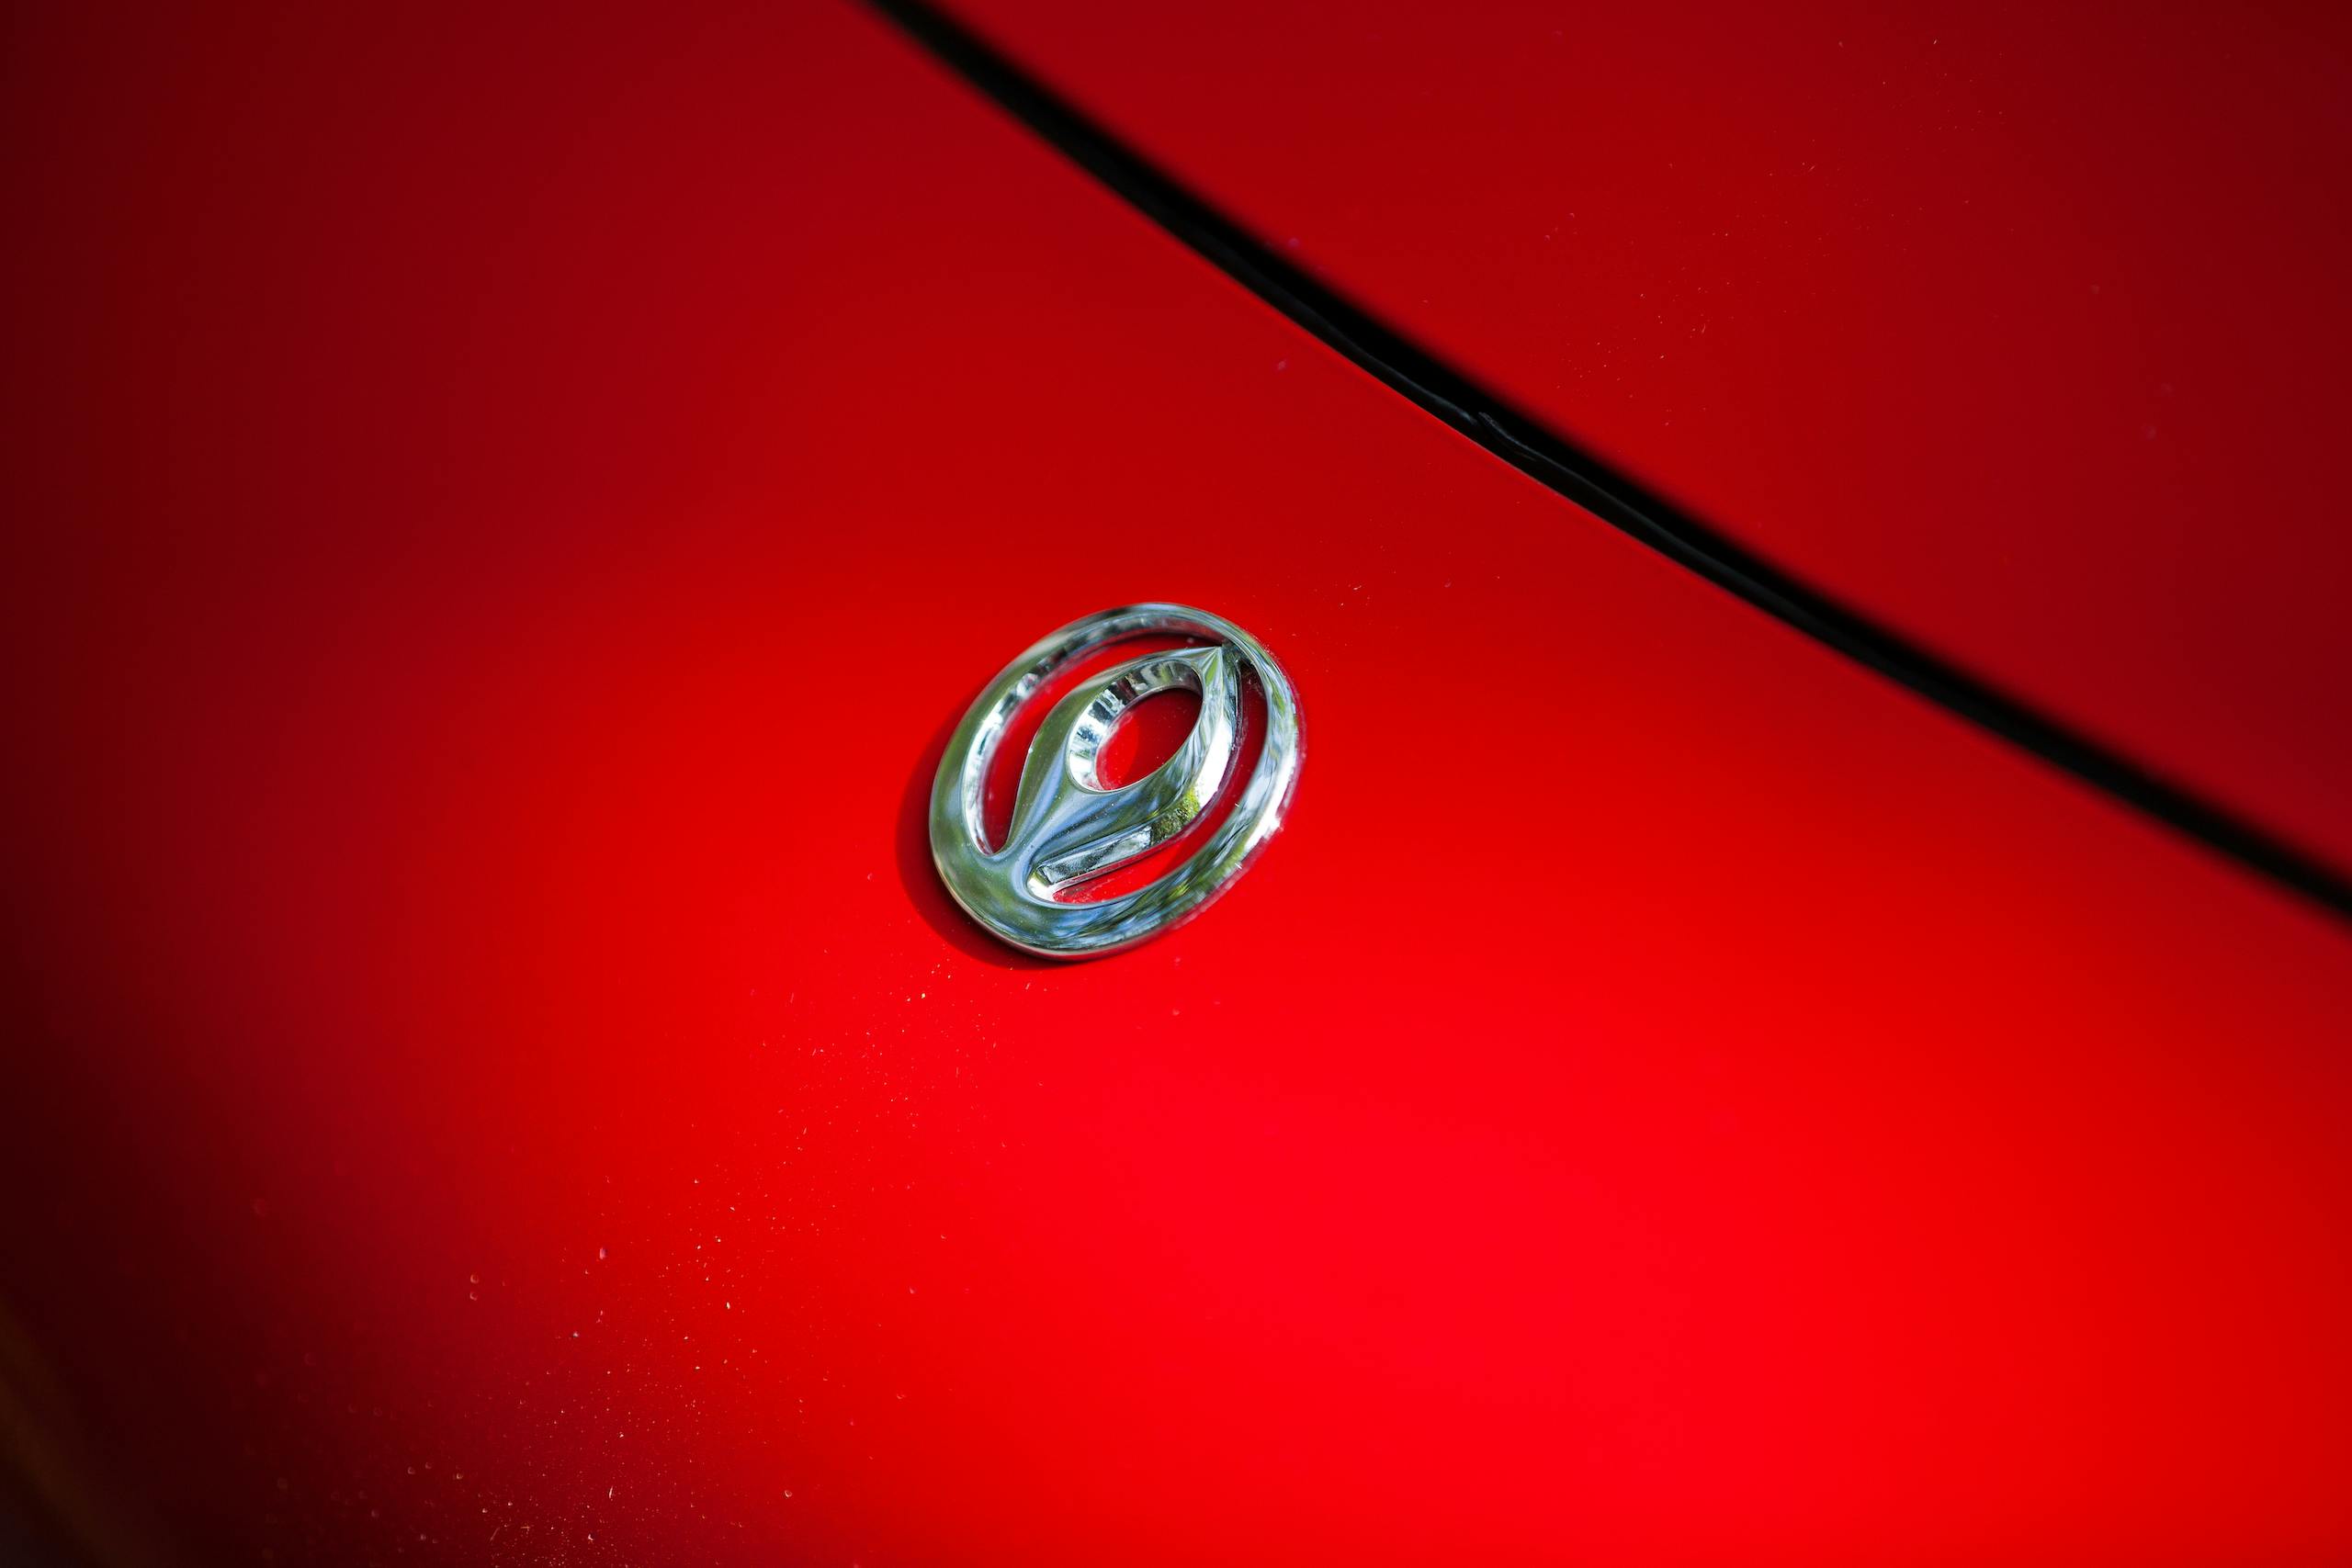 1995 Mazda Miata emblem